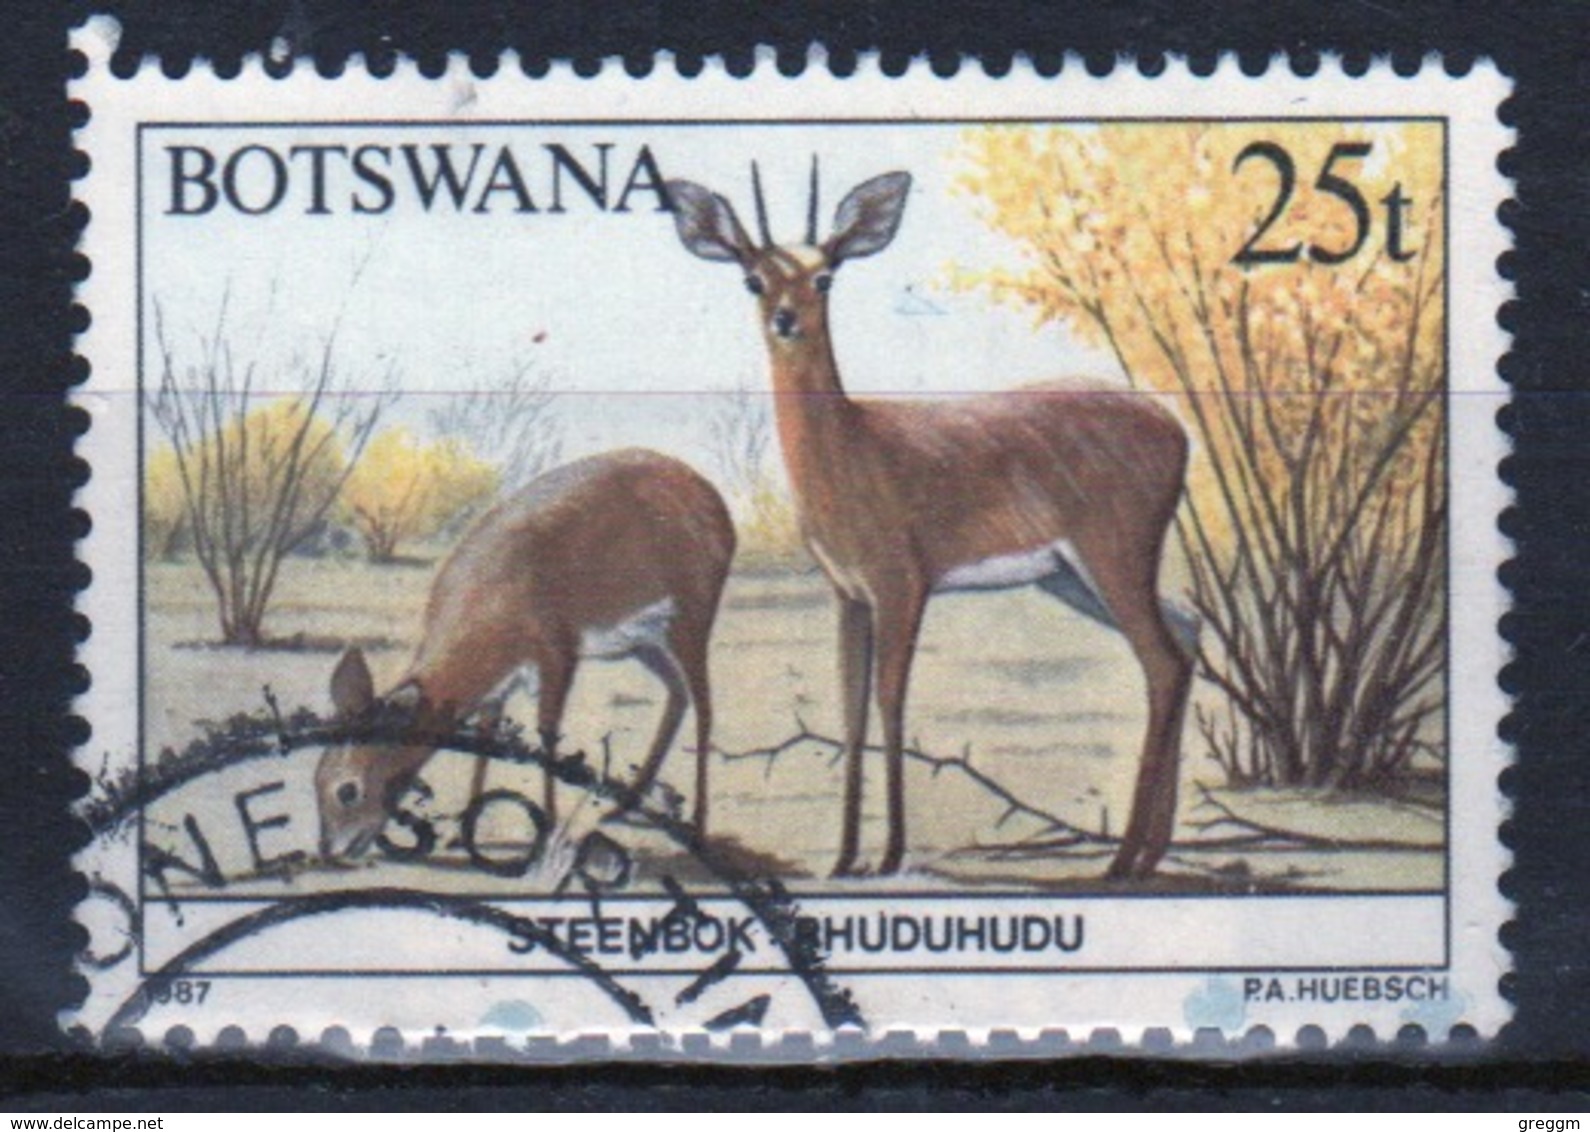 Botswana 1987 Single 25t Commemorative Stamp From The Animals Of Botswana Set. - Botswana (1966-...)